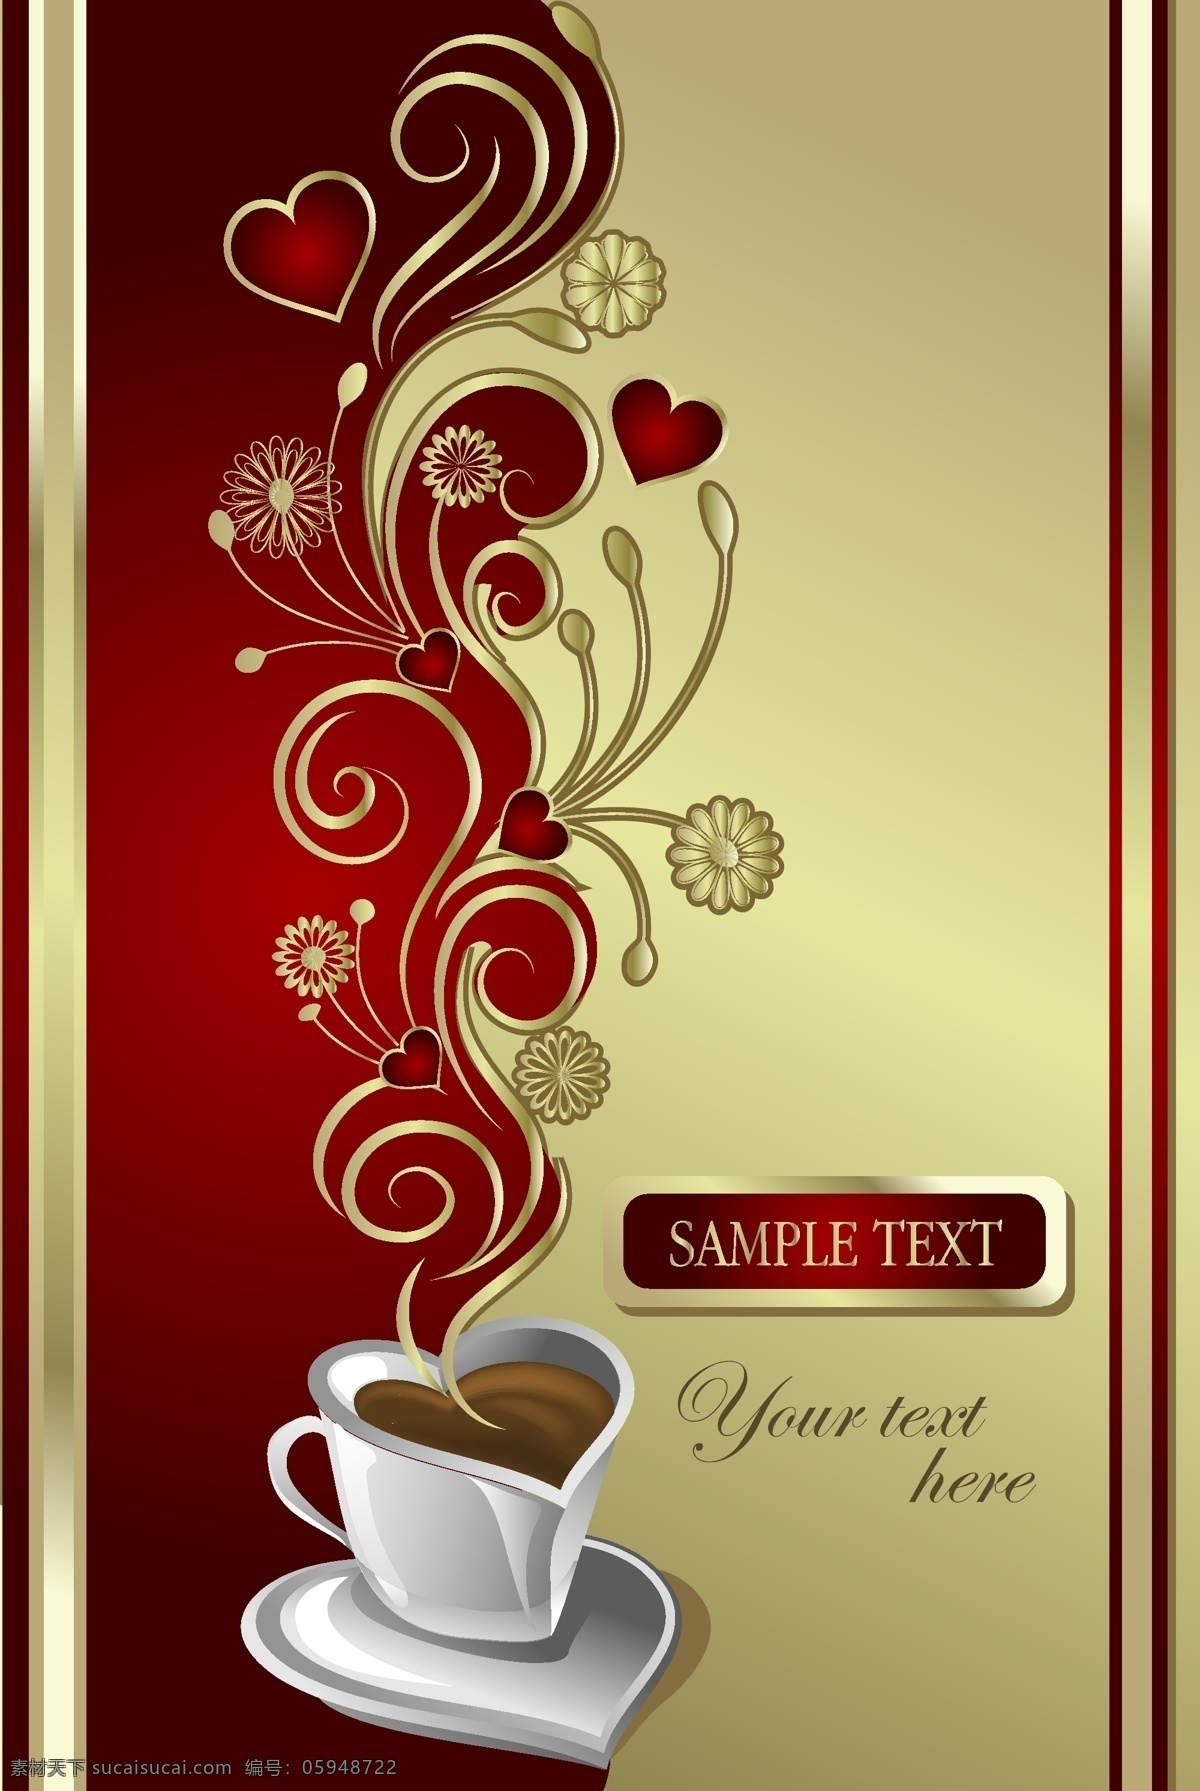 心形 咖啡杯 爱心咖啡屋 咖啡厅 餐 牌 封面设计 矢量封面设计 心形咖啡杯 矢量图 其他矢量图